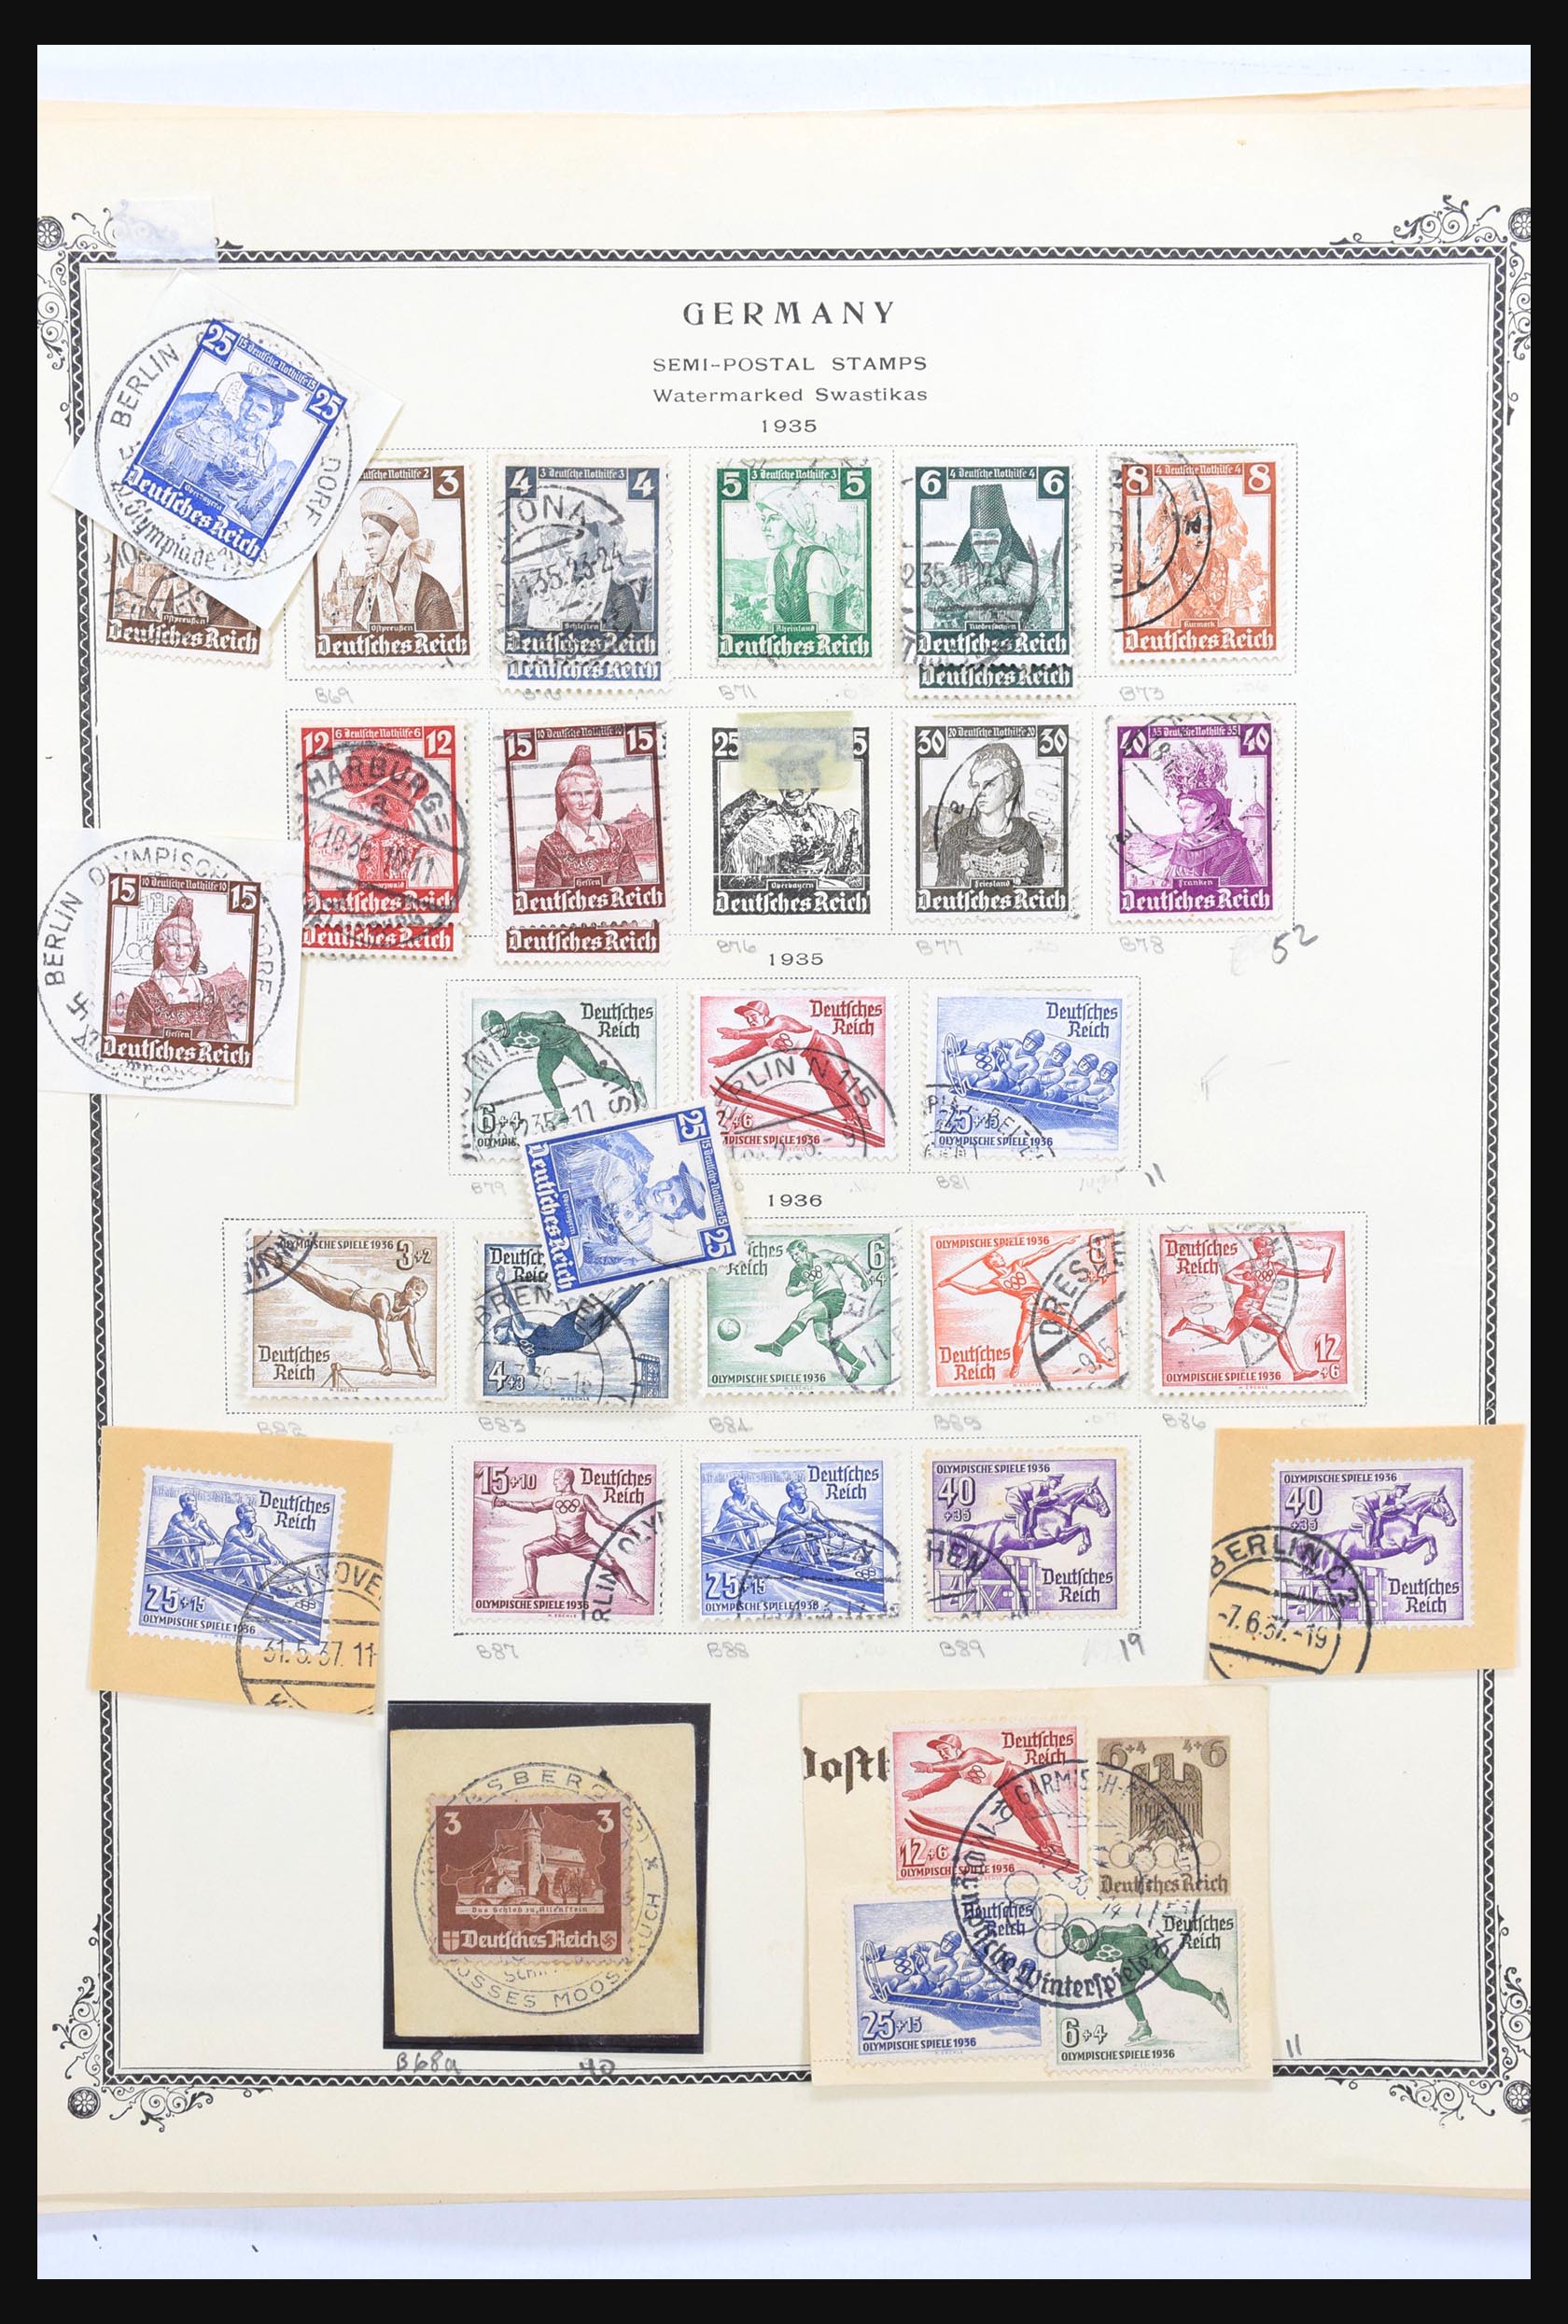 31300 263 - 31300 Duitsland superverzameling 1849-1990.